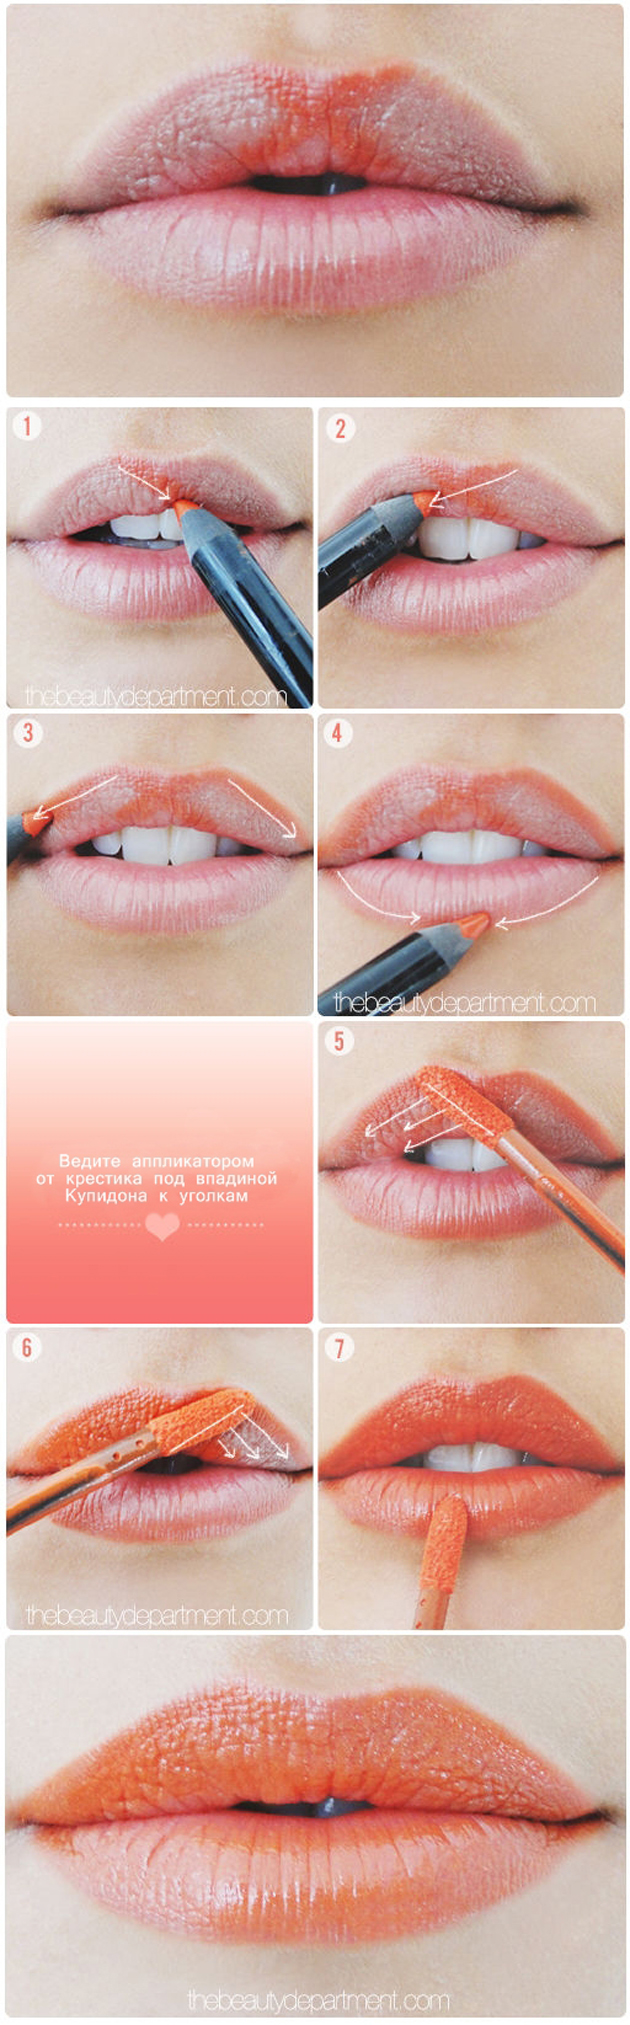 Как нарисовать пухлые губы макияж